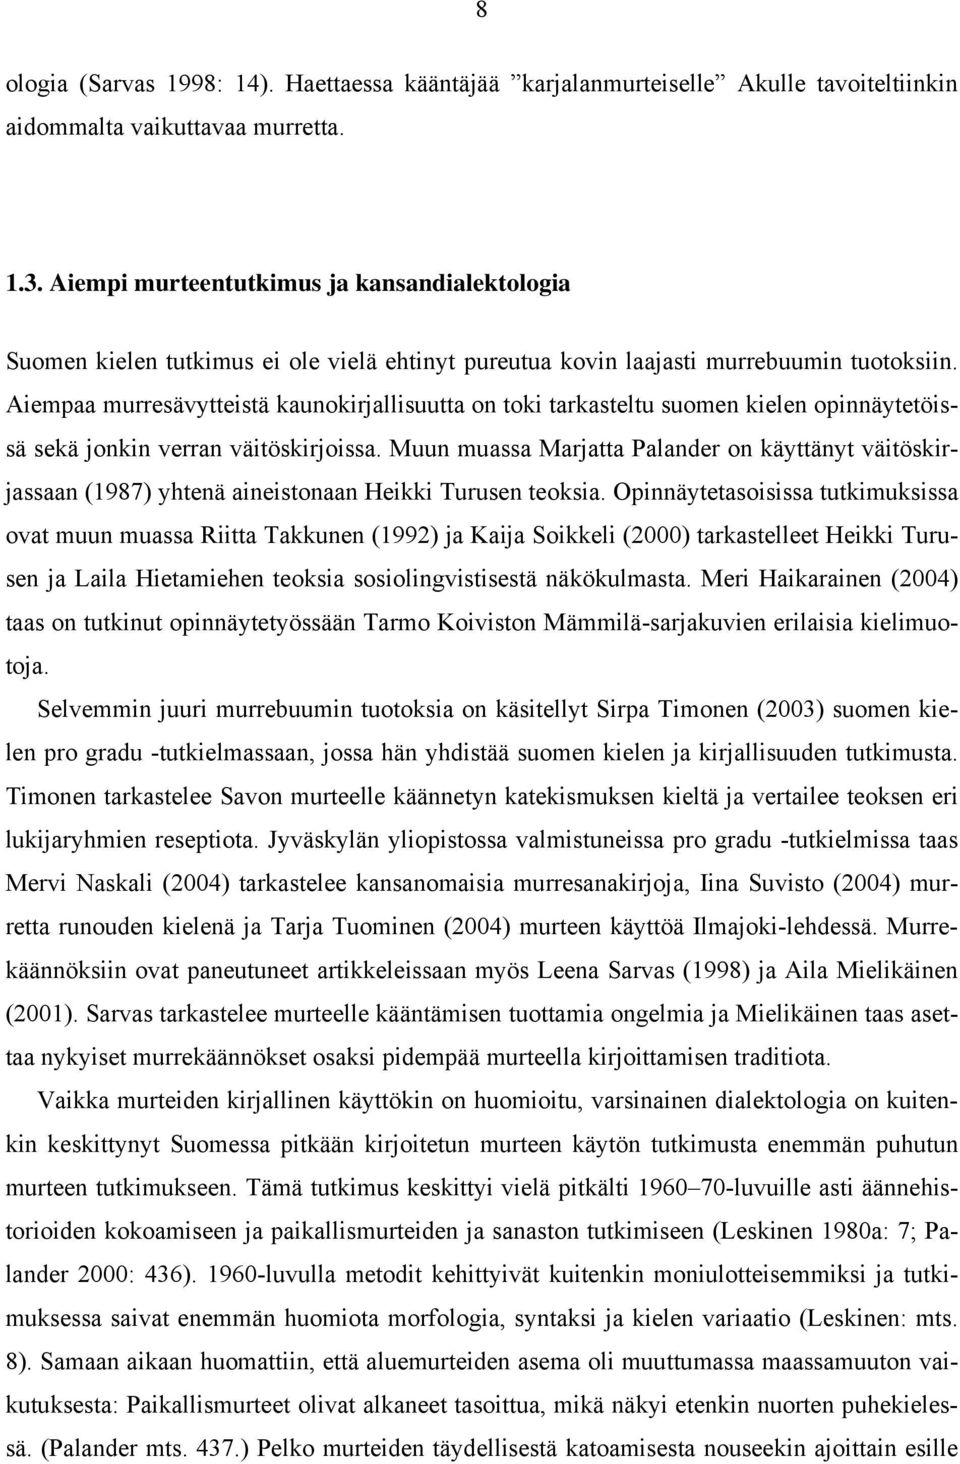 Aiempaa murresävytteistä kaunokirjallisuutta on toki tarkasteltu suomen kielen opinnäytetöissä sekä jonkin verran väitöskirjoissa.